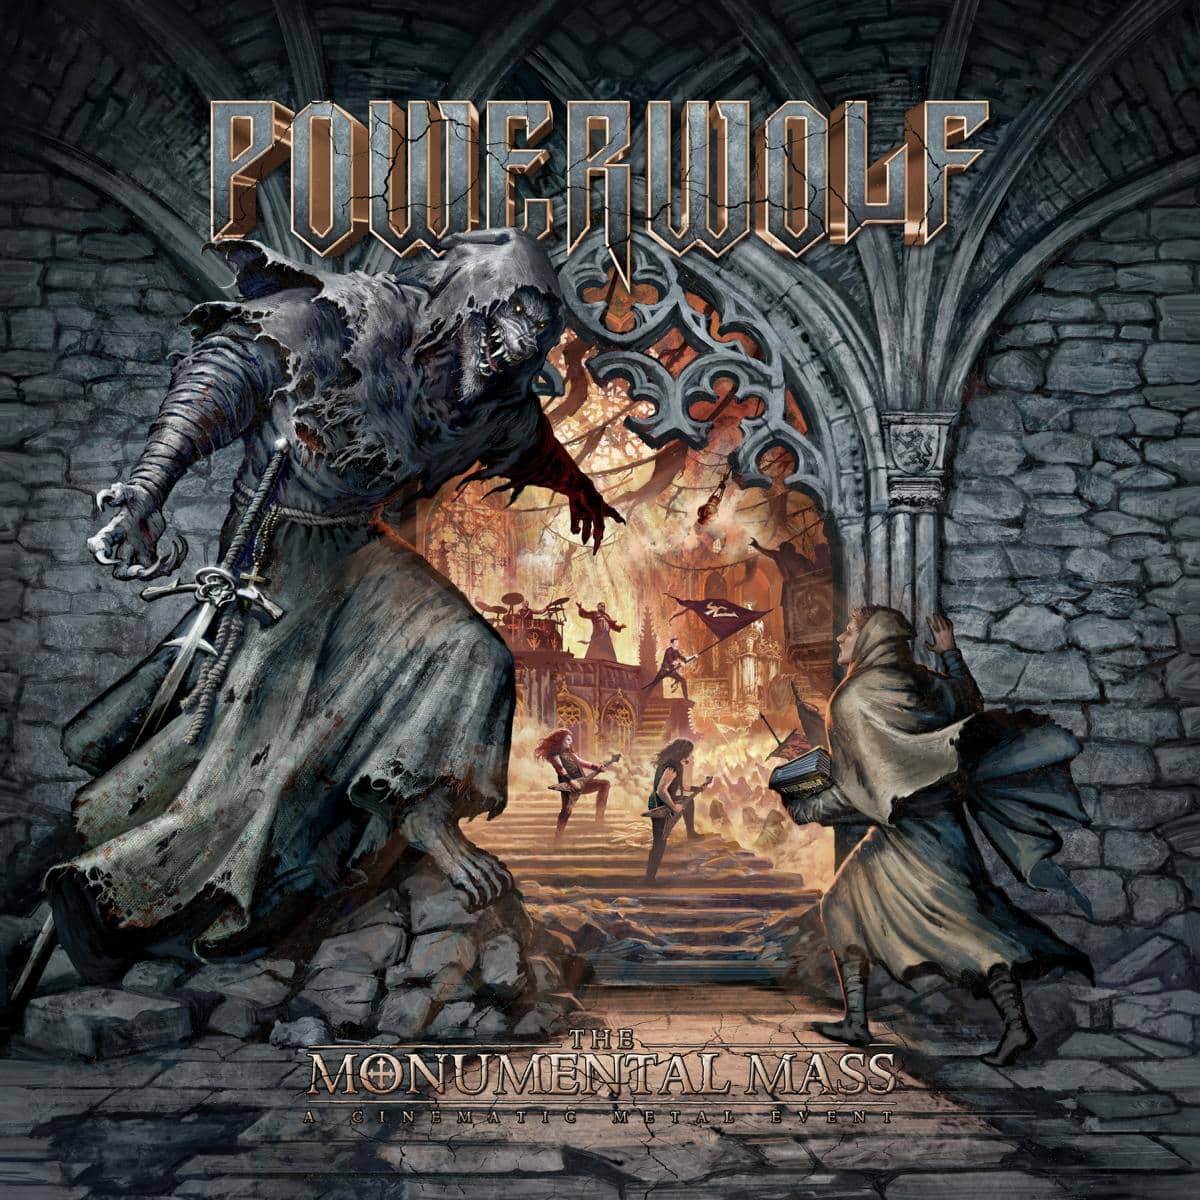 powerwolf the monumental mass cover art.jpeg